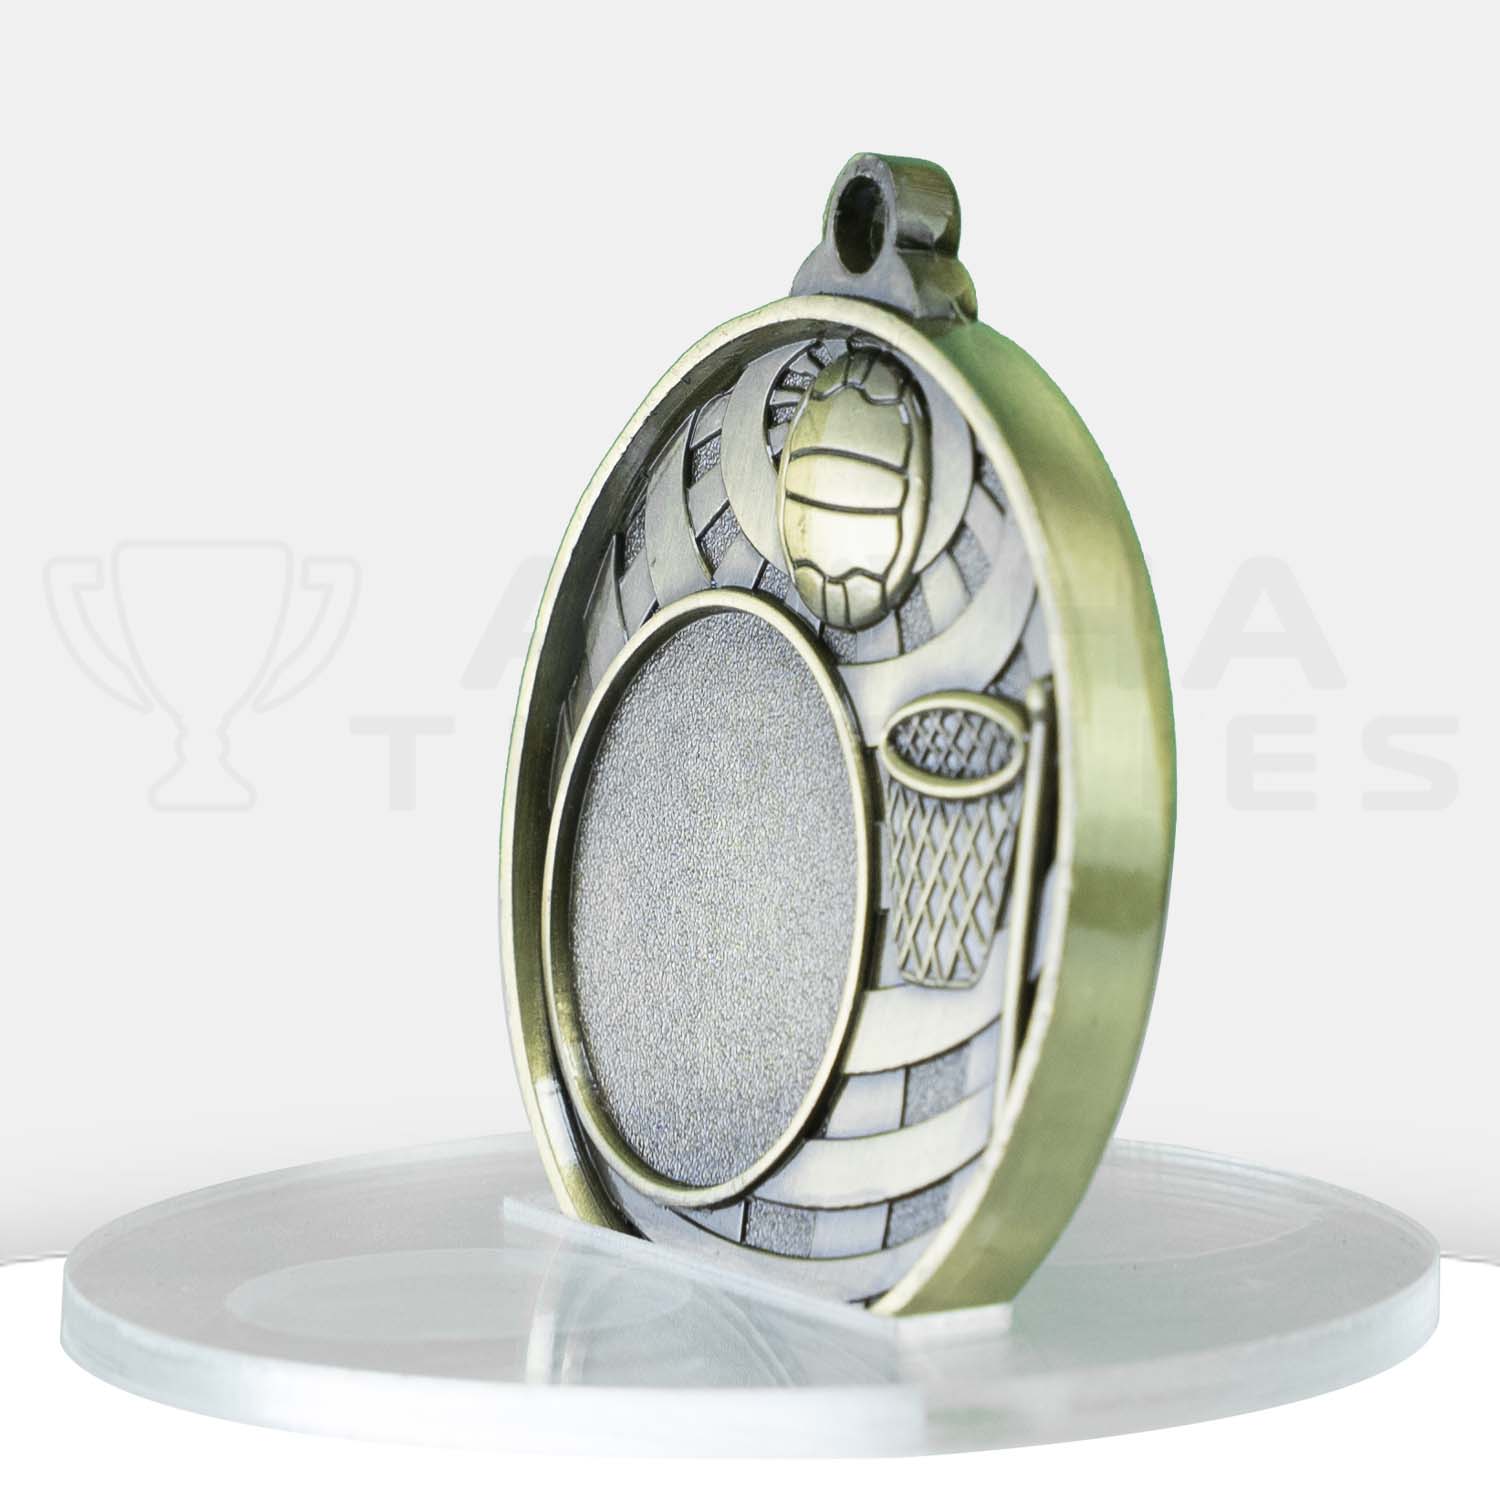 global-netball-logo-medal-1073c-8g-side